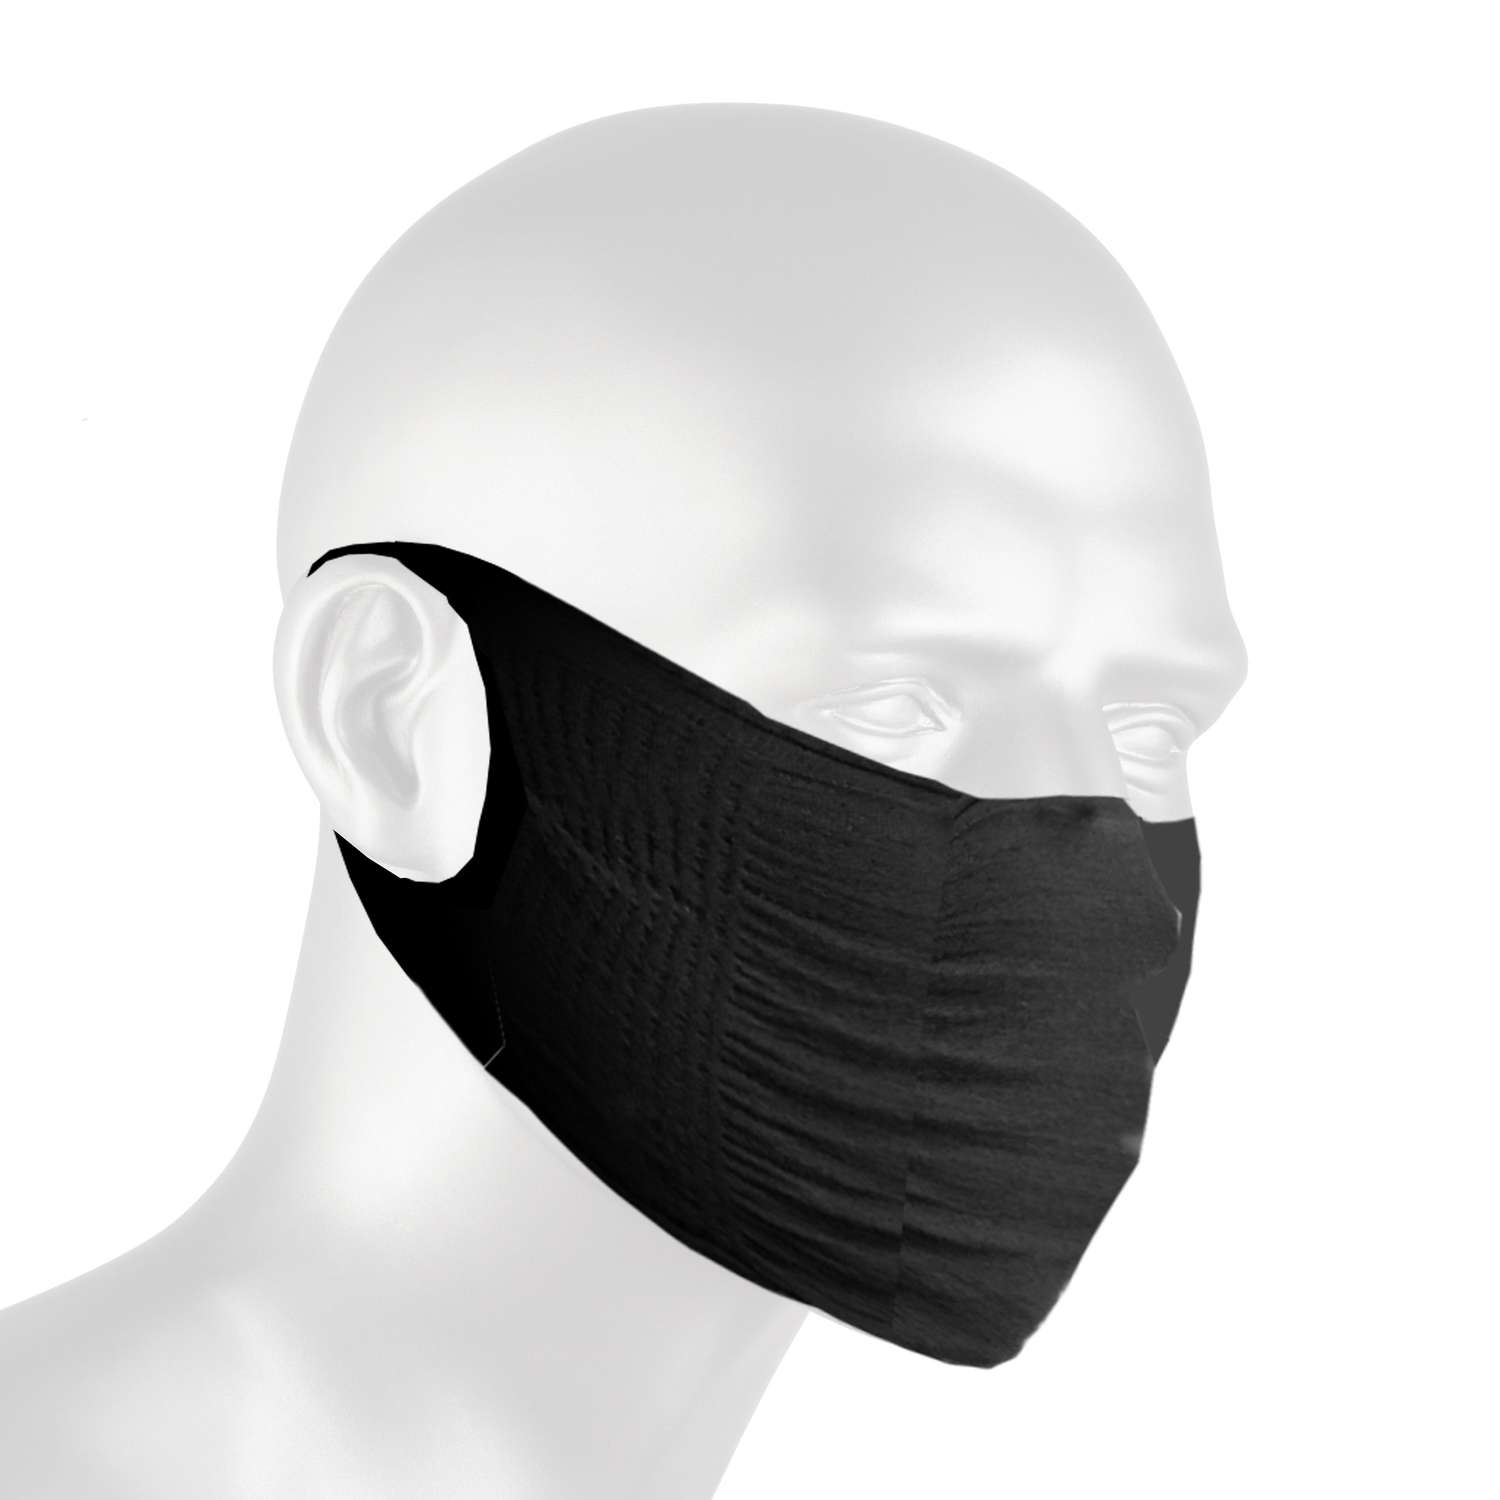 ZShield Face Mask Black 1 pk - Ace Hardware